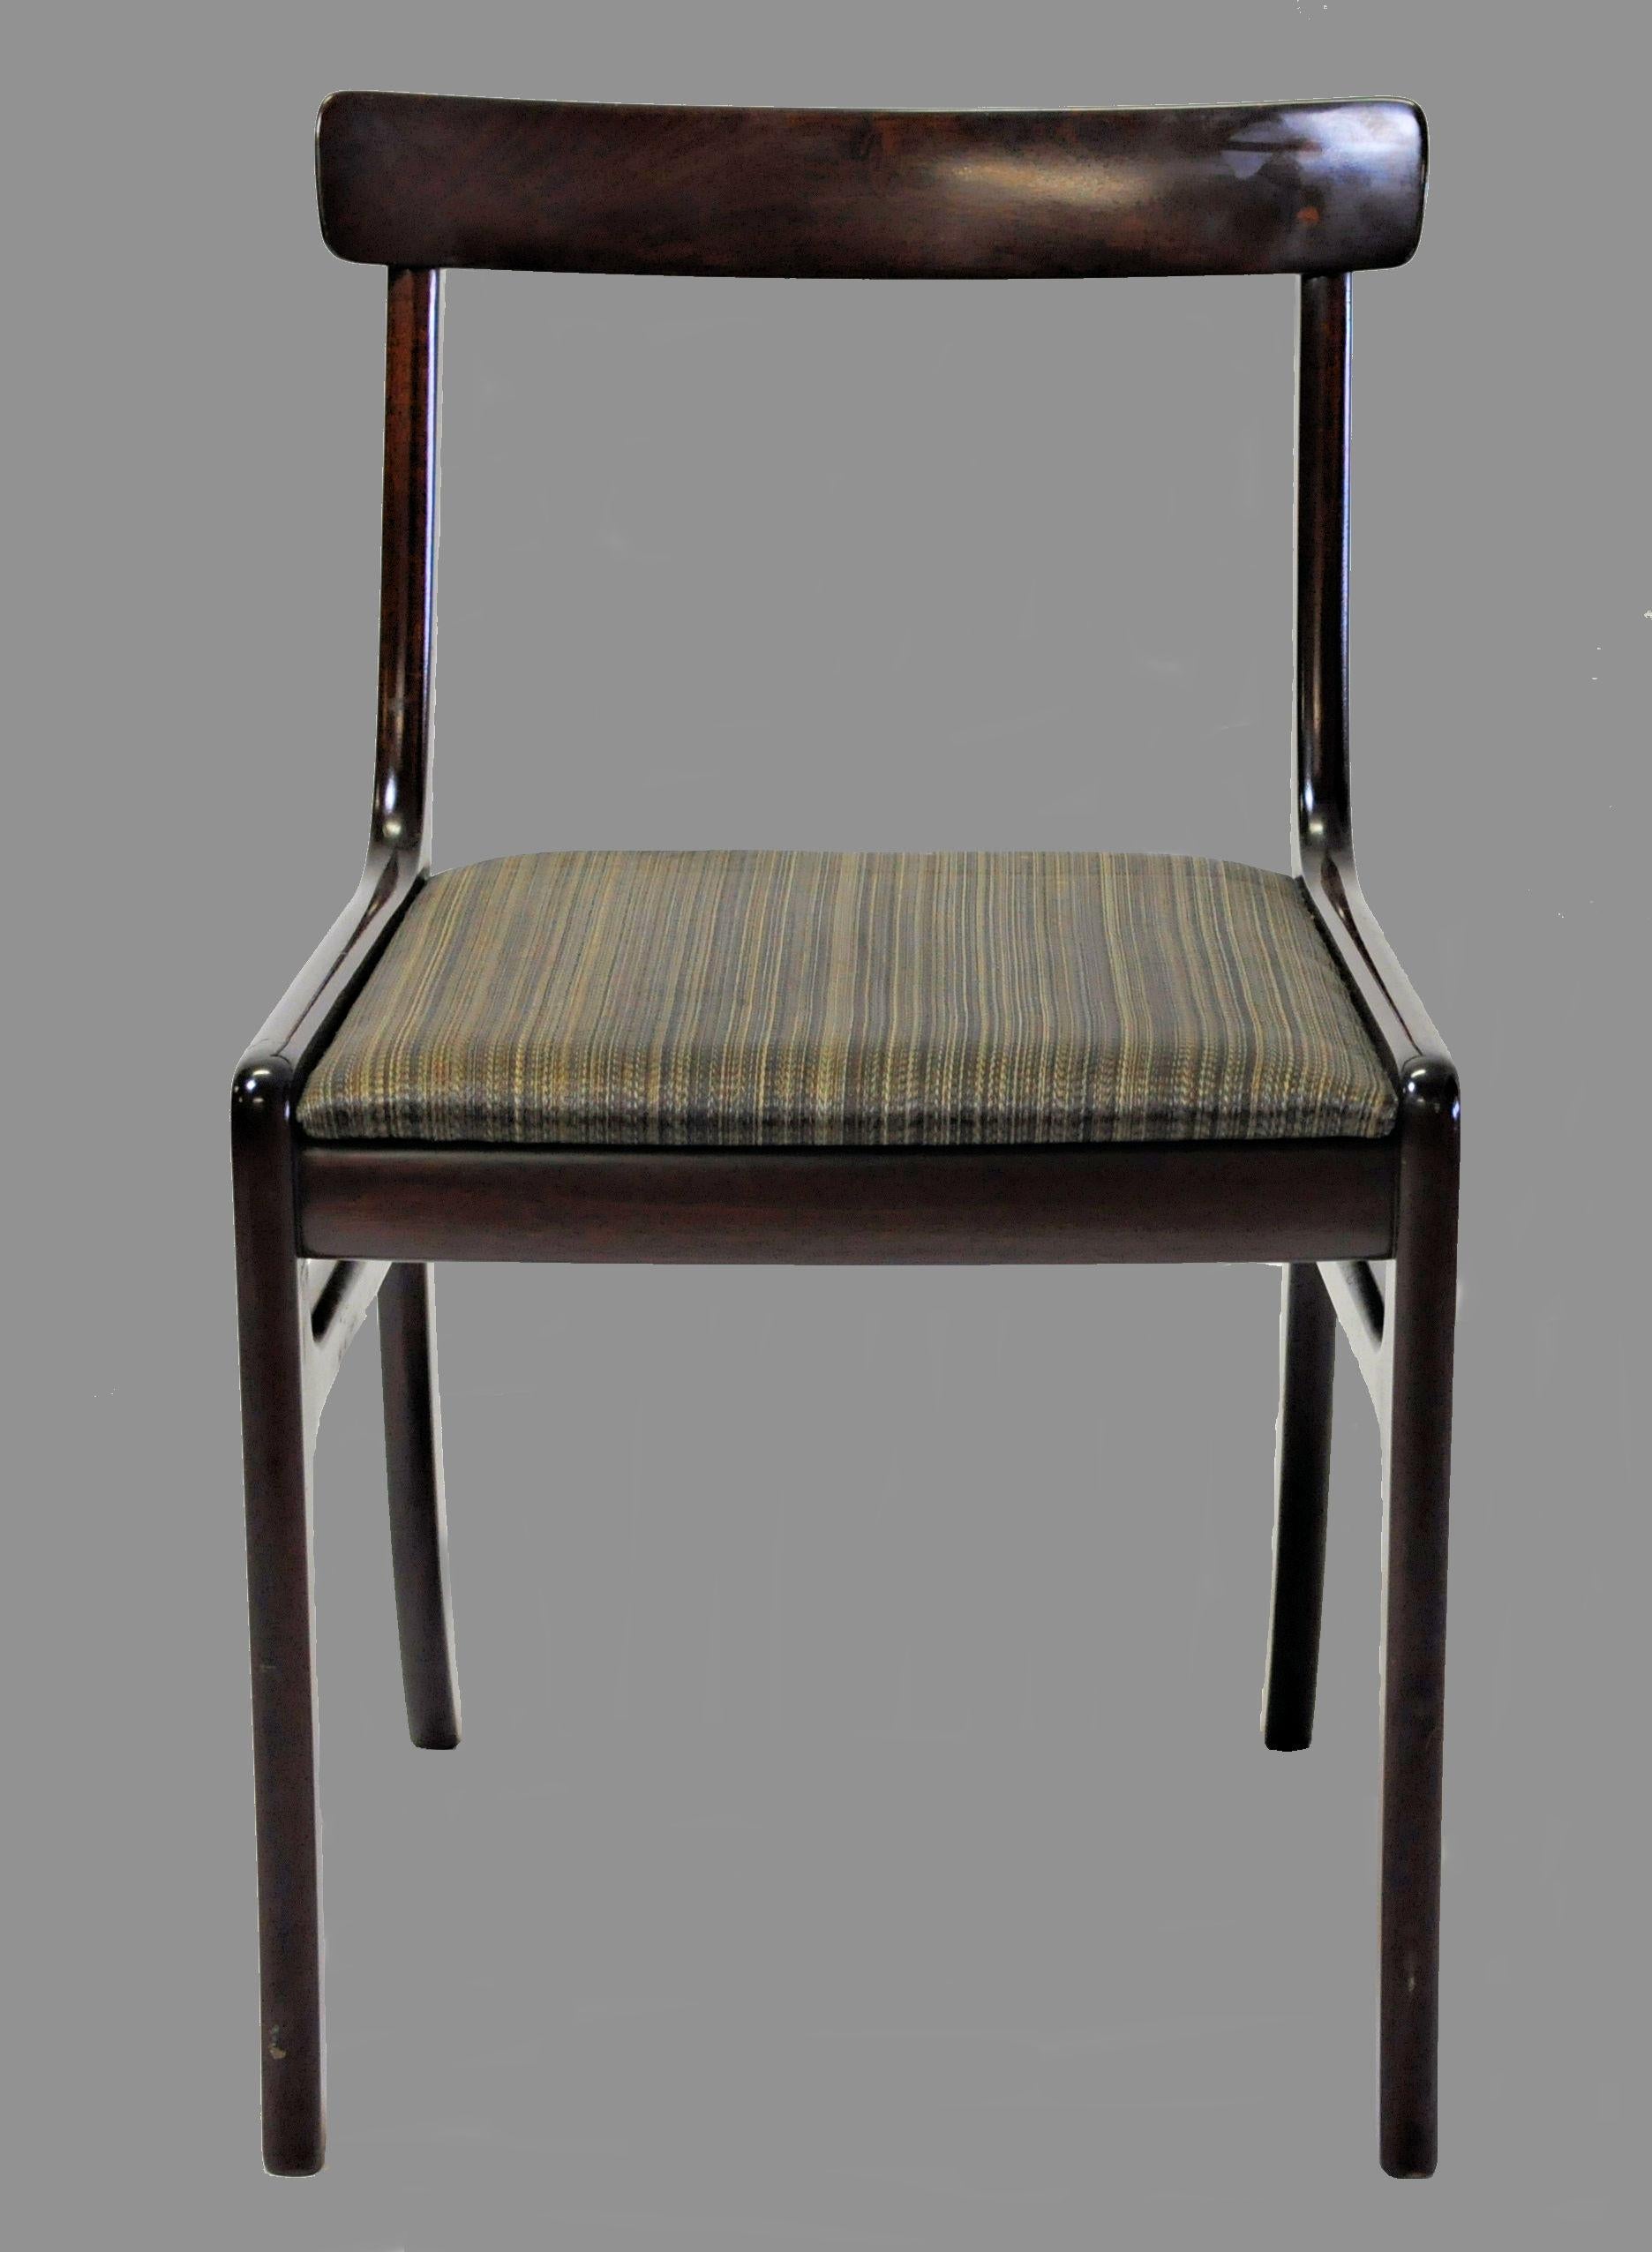 Cet ensemble de six chaises de salle à manger Rungstedlund en acajou, conçu par Ole Wanscher, a été produit dans les années 1960 et 1970 par Poul Jeppesen Furniture. 

Les chaises de salle à manger font partie de la série de meubles de salle à